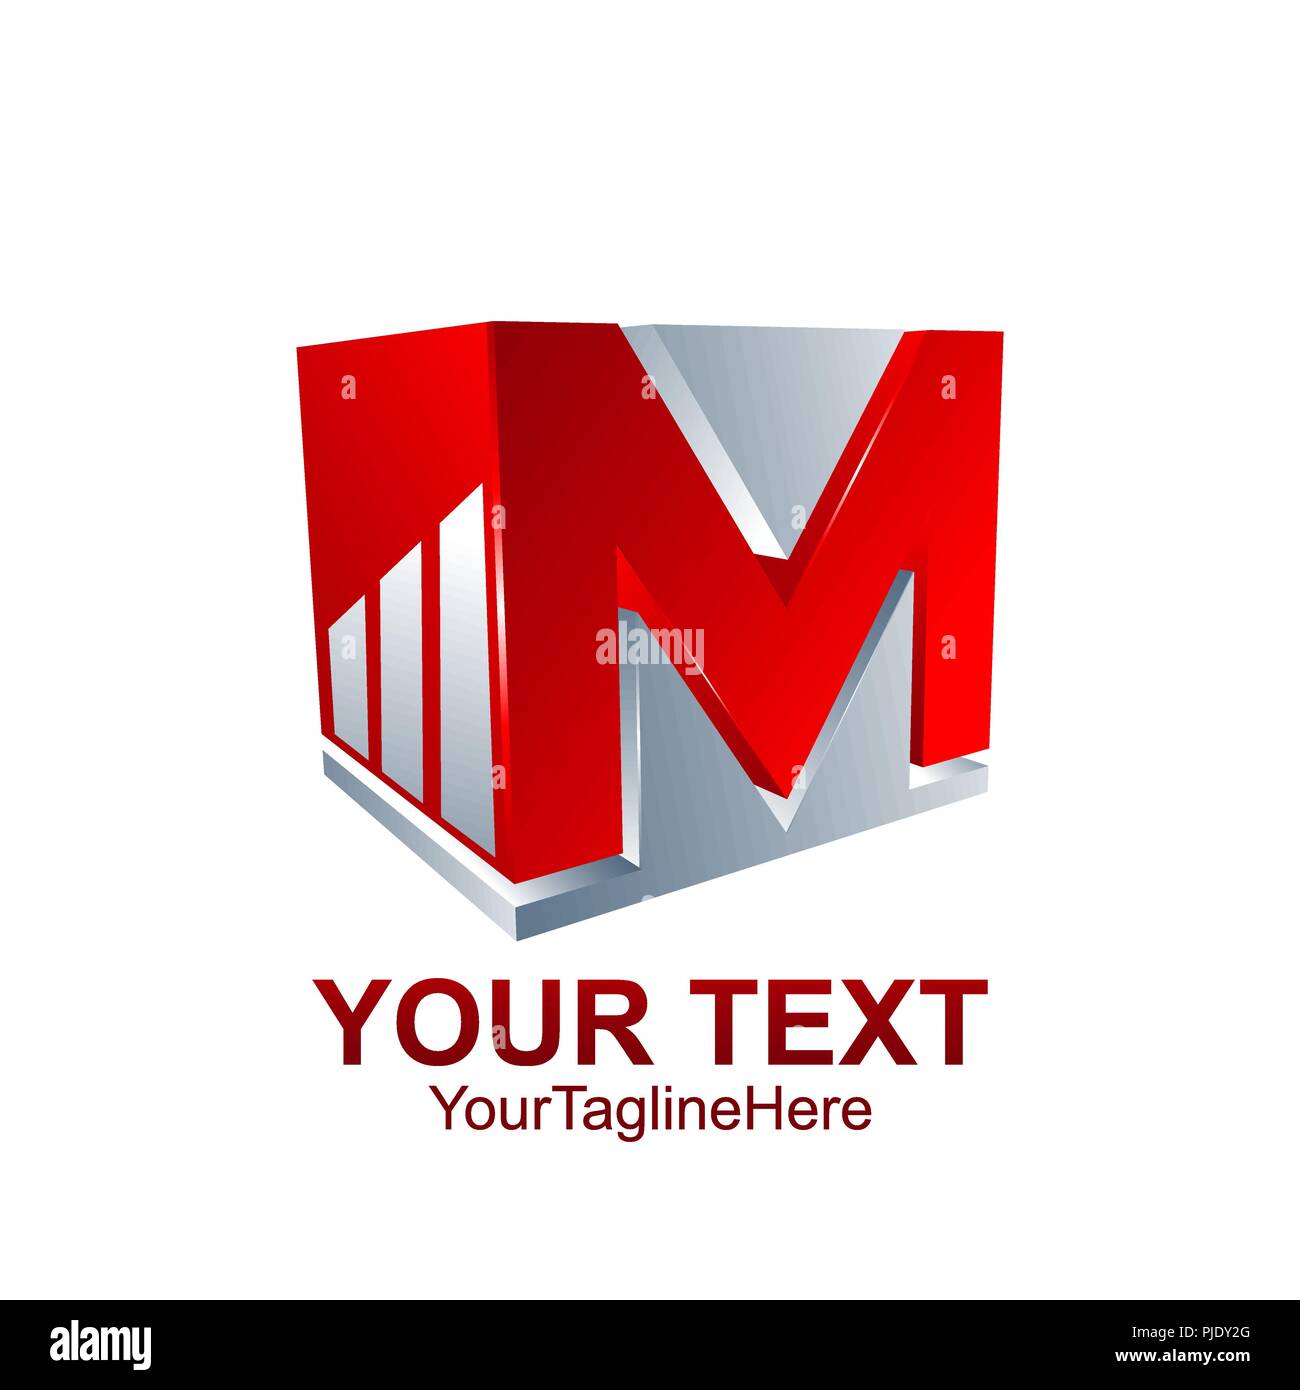 Anfangsbuchstabe M Logo Vorlage farbig Rot Grau cube Grafik Design für Business und Unternehmen Identität Stock Vektor